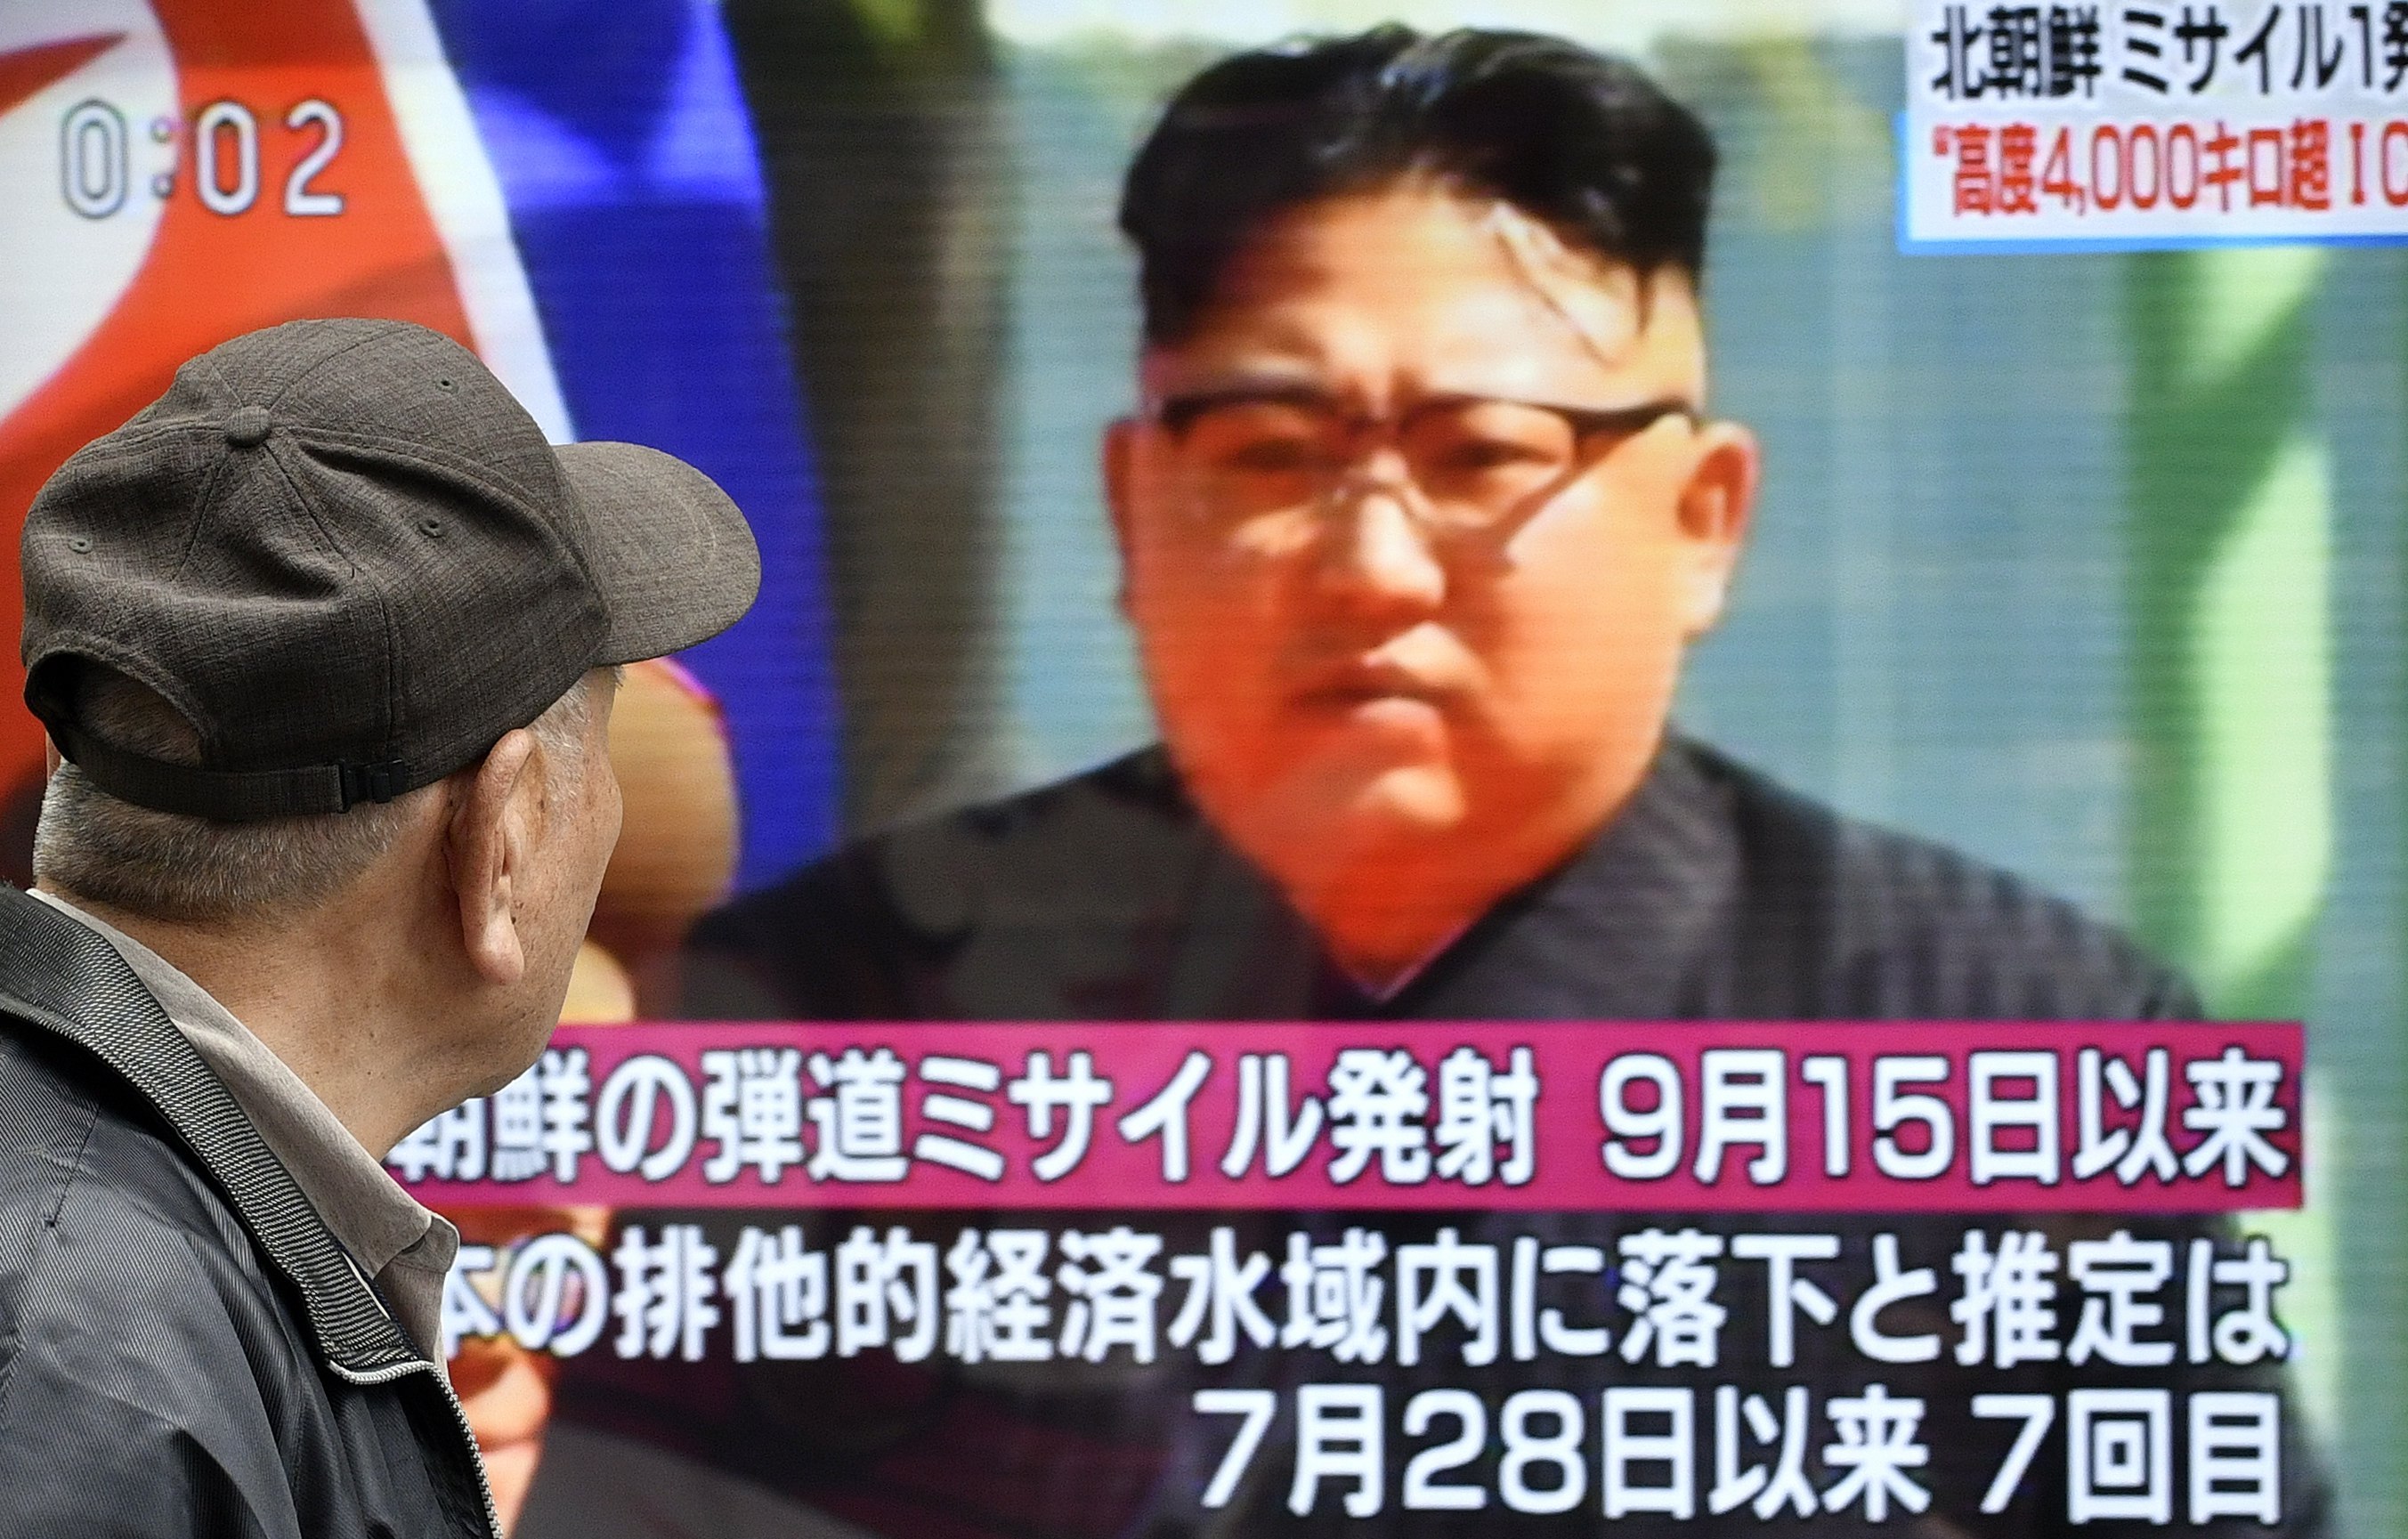 Corea del Norte se autodeclara "Estado nuclear", afirma que defenderá la paz